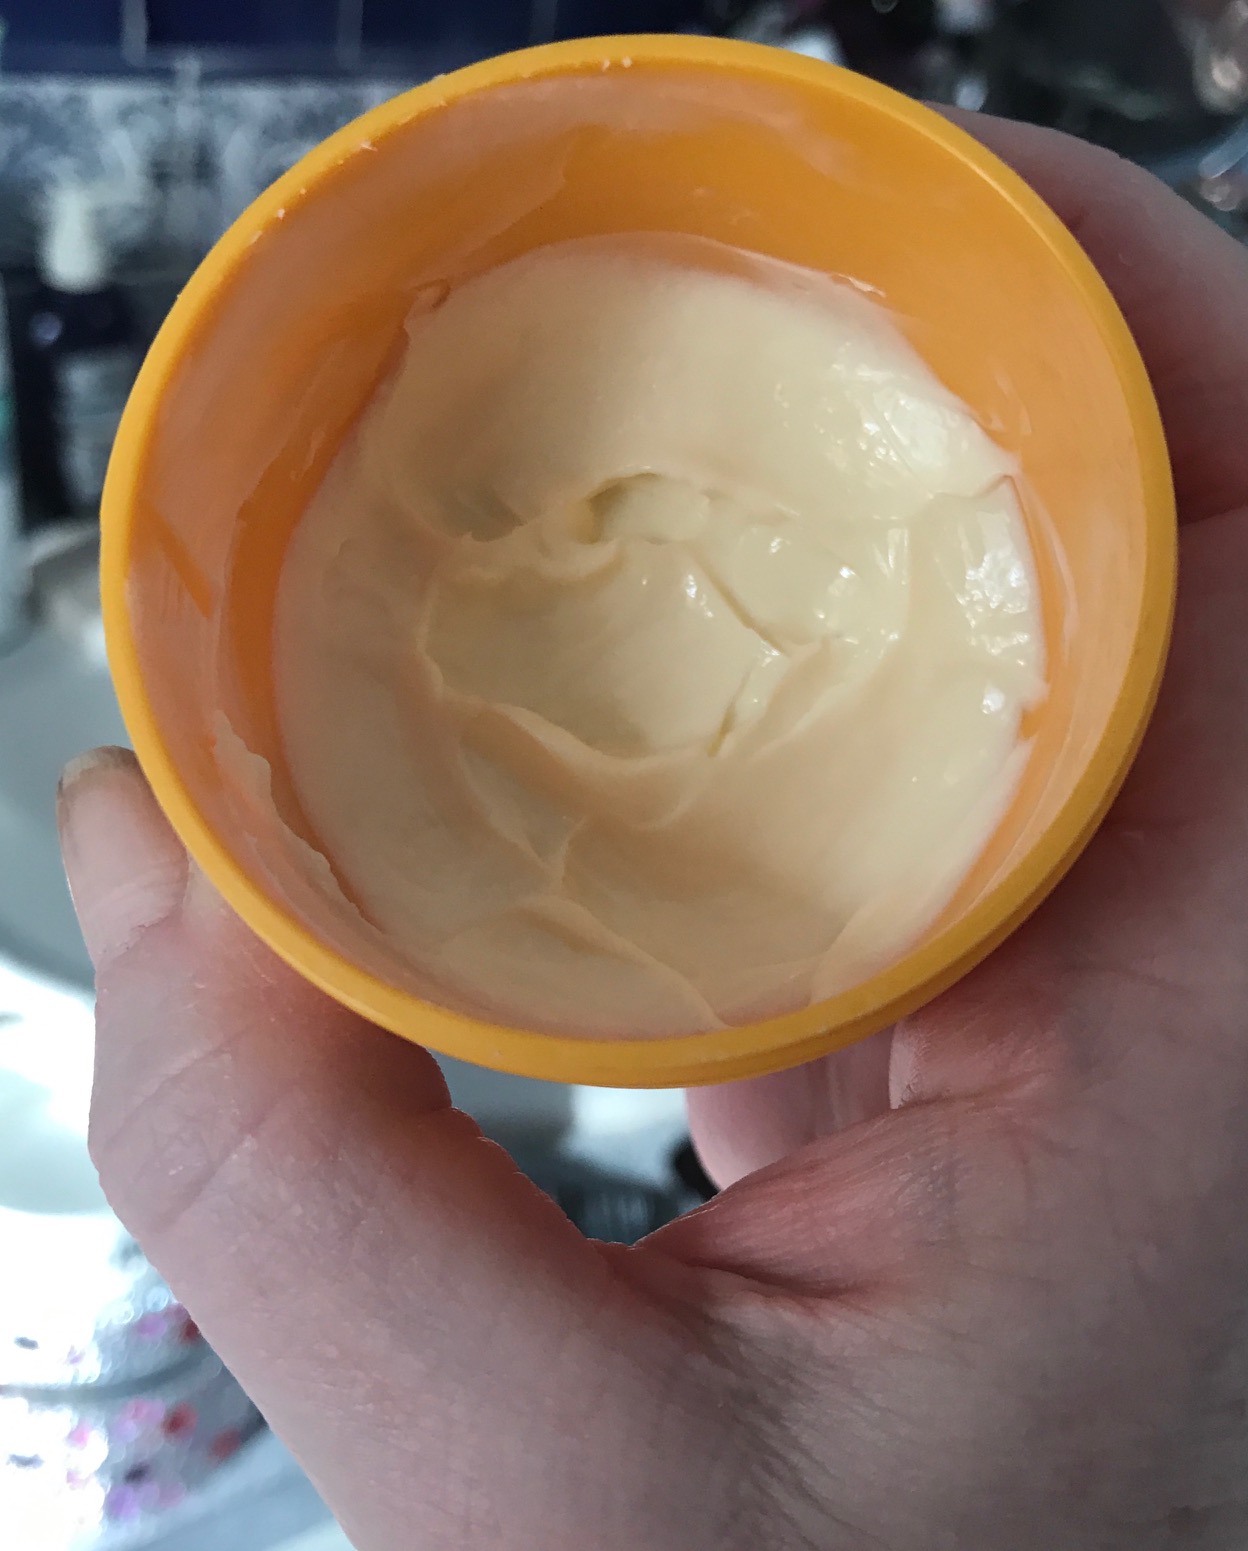 the cream inside the tub of Sol de Janeiro Bum Bum Cream, neversaydiebeauty.com